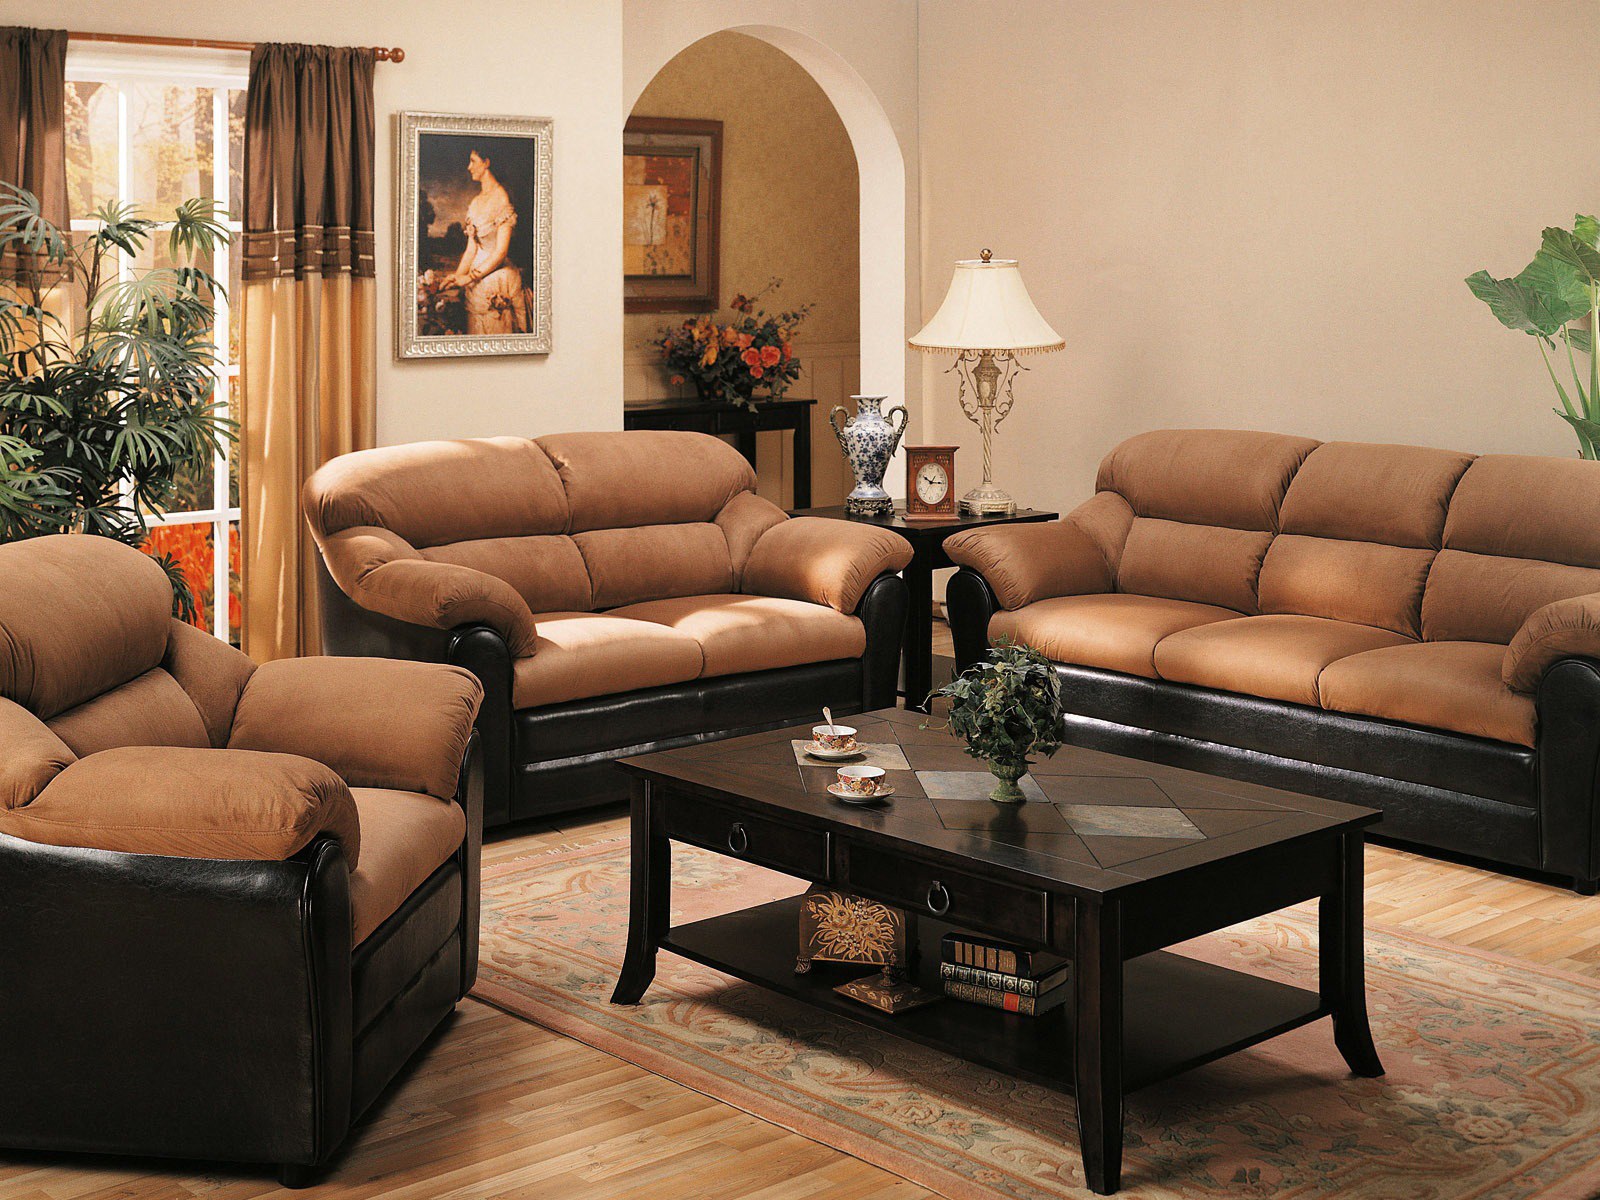 Современные диваны кресла. Красивый диван в интерьере. Мягкая мебель в интерьере гостиной. Набор мягкой мебели для гостиной. Диван для зала.